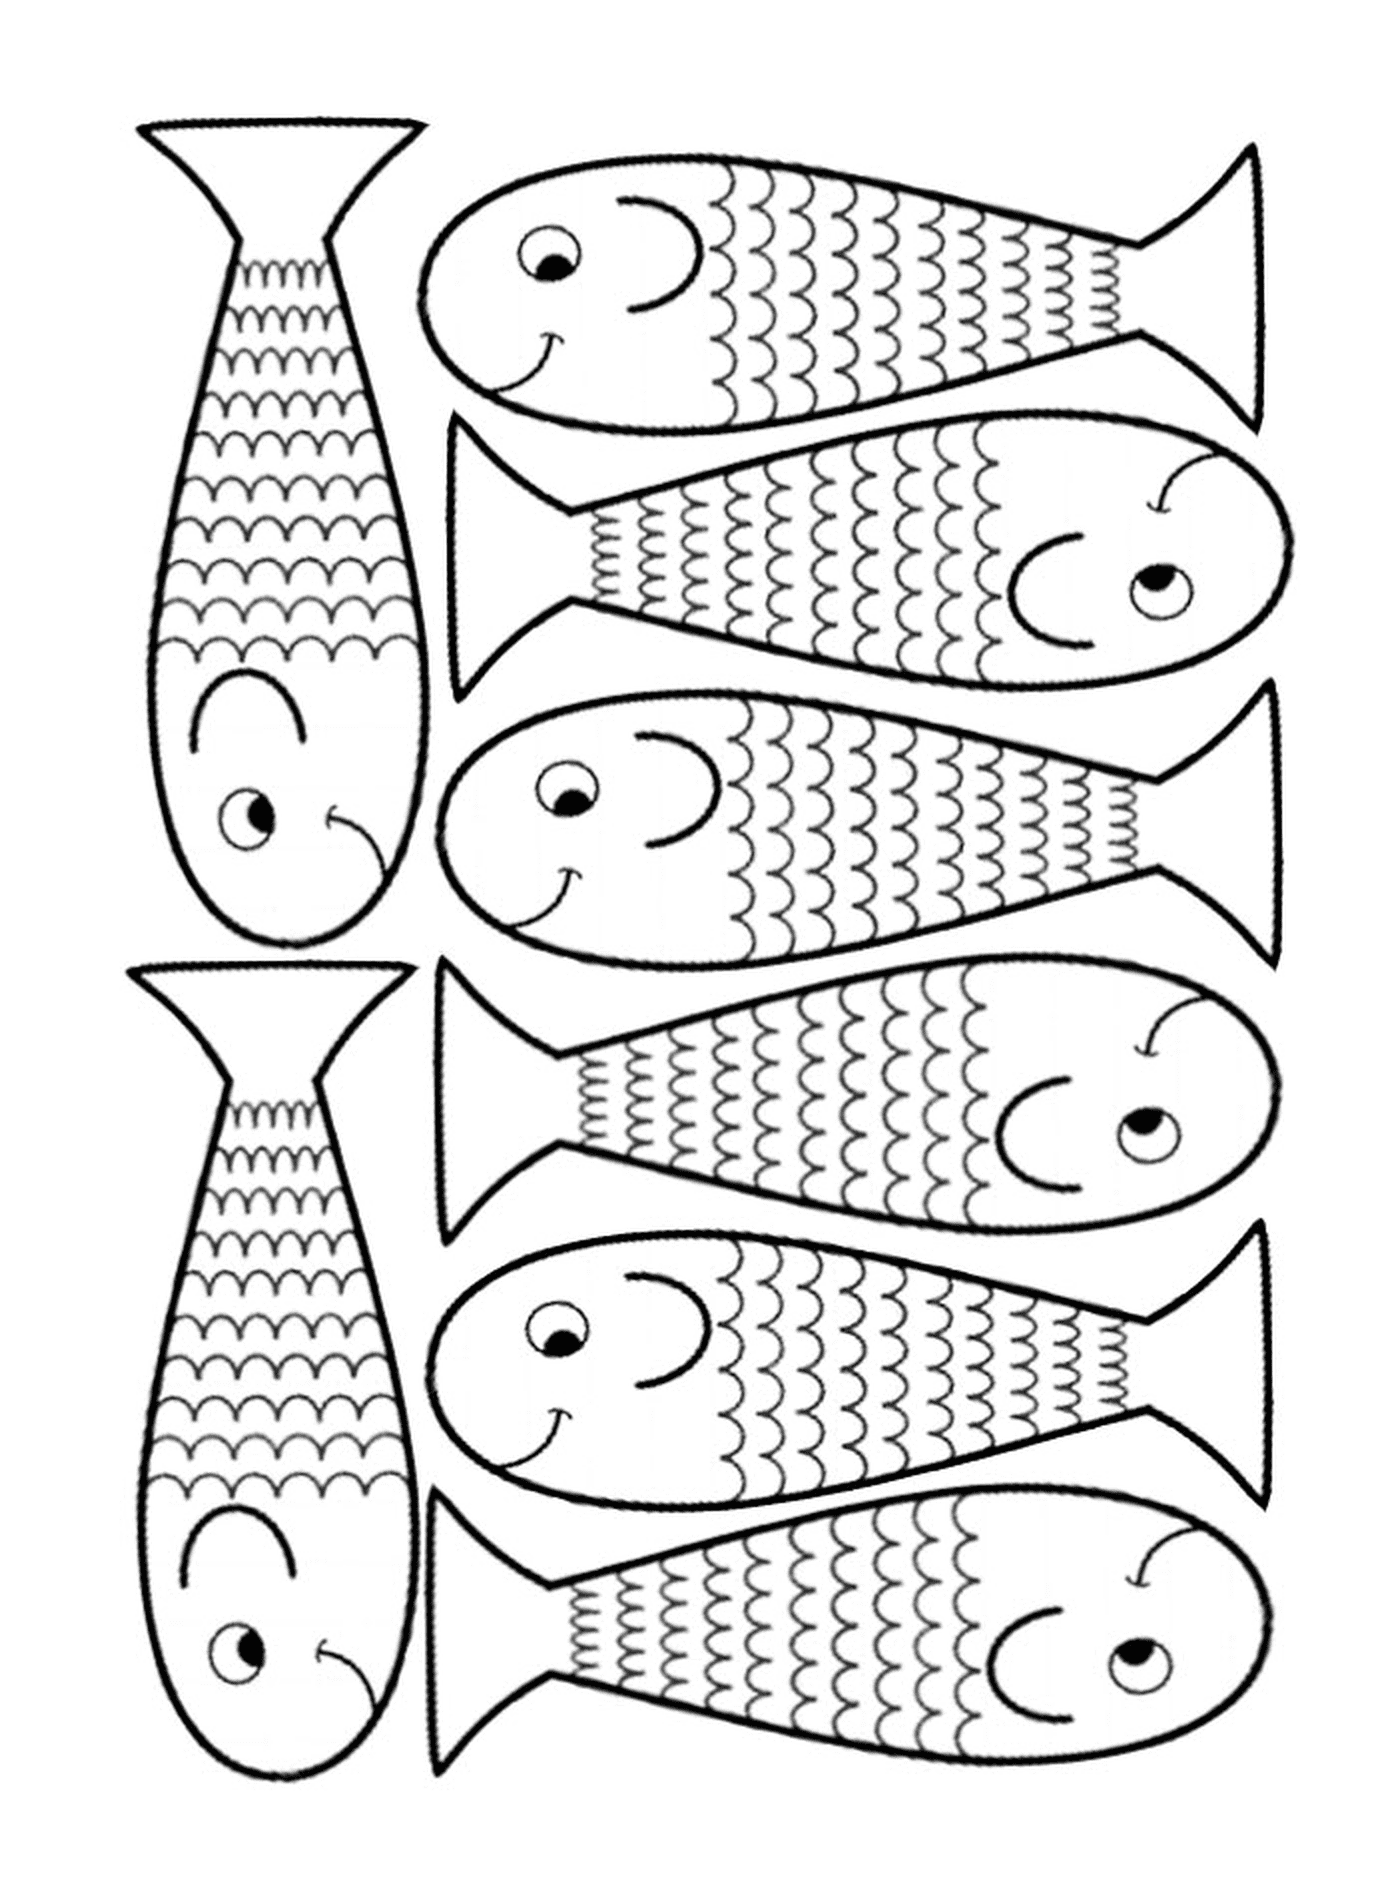  Possibilità di disegnare diversi pesci 